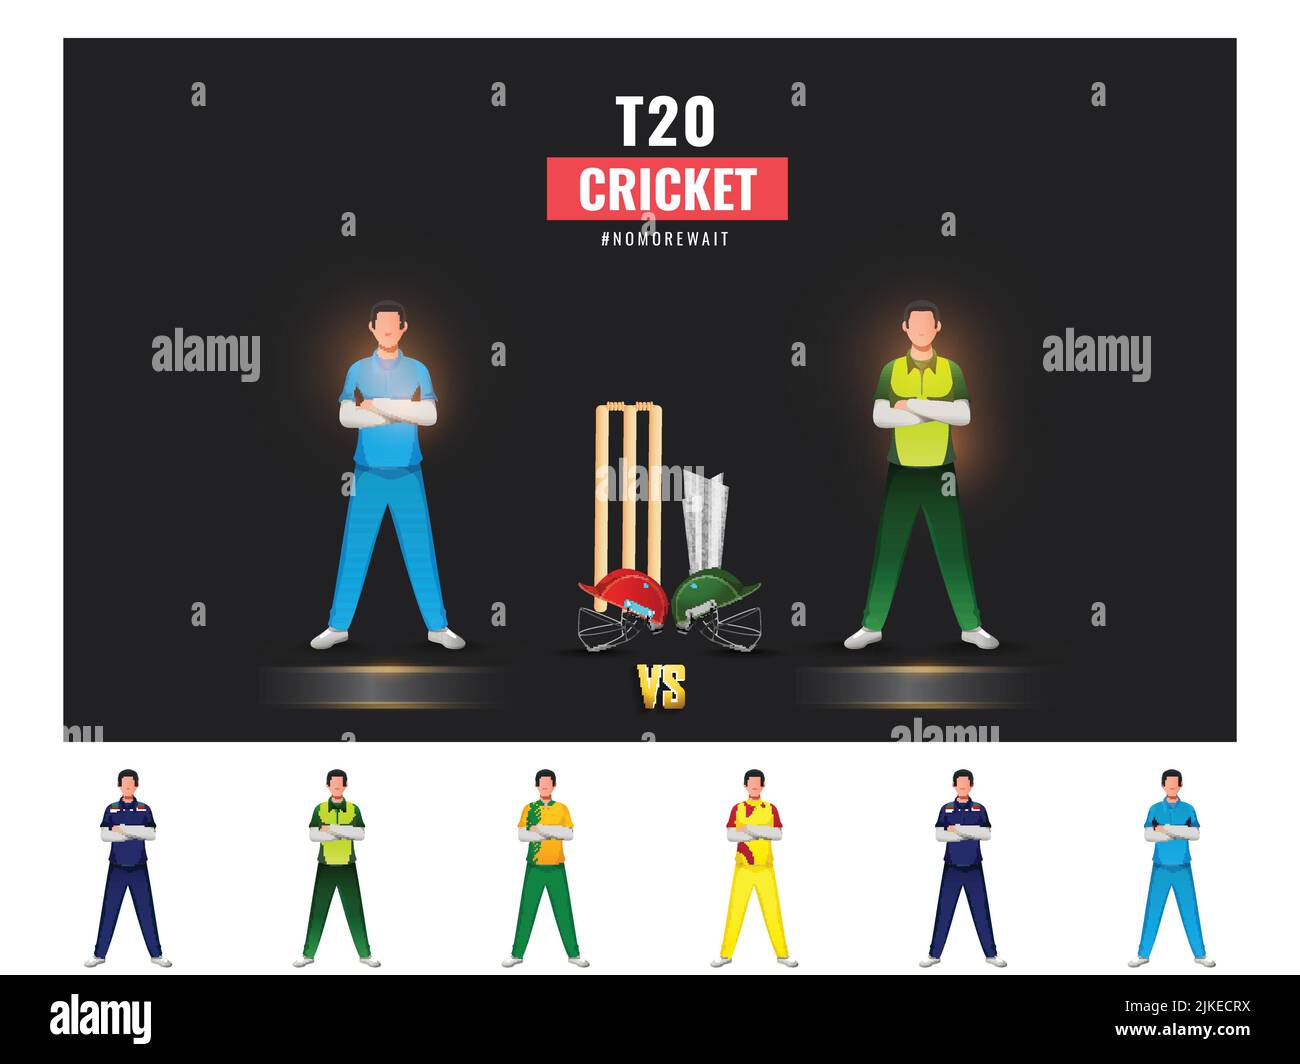 T20 Cricket Match Teilnehmerländer Spieler mit Afghanistan gegen Pakistan Highlights auf Schwarz-Weiß Hintergrund. Stock Vektor